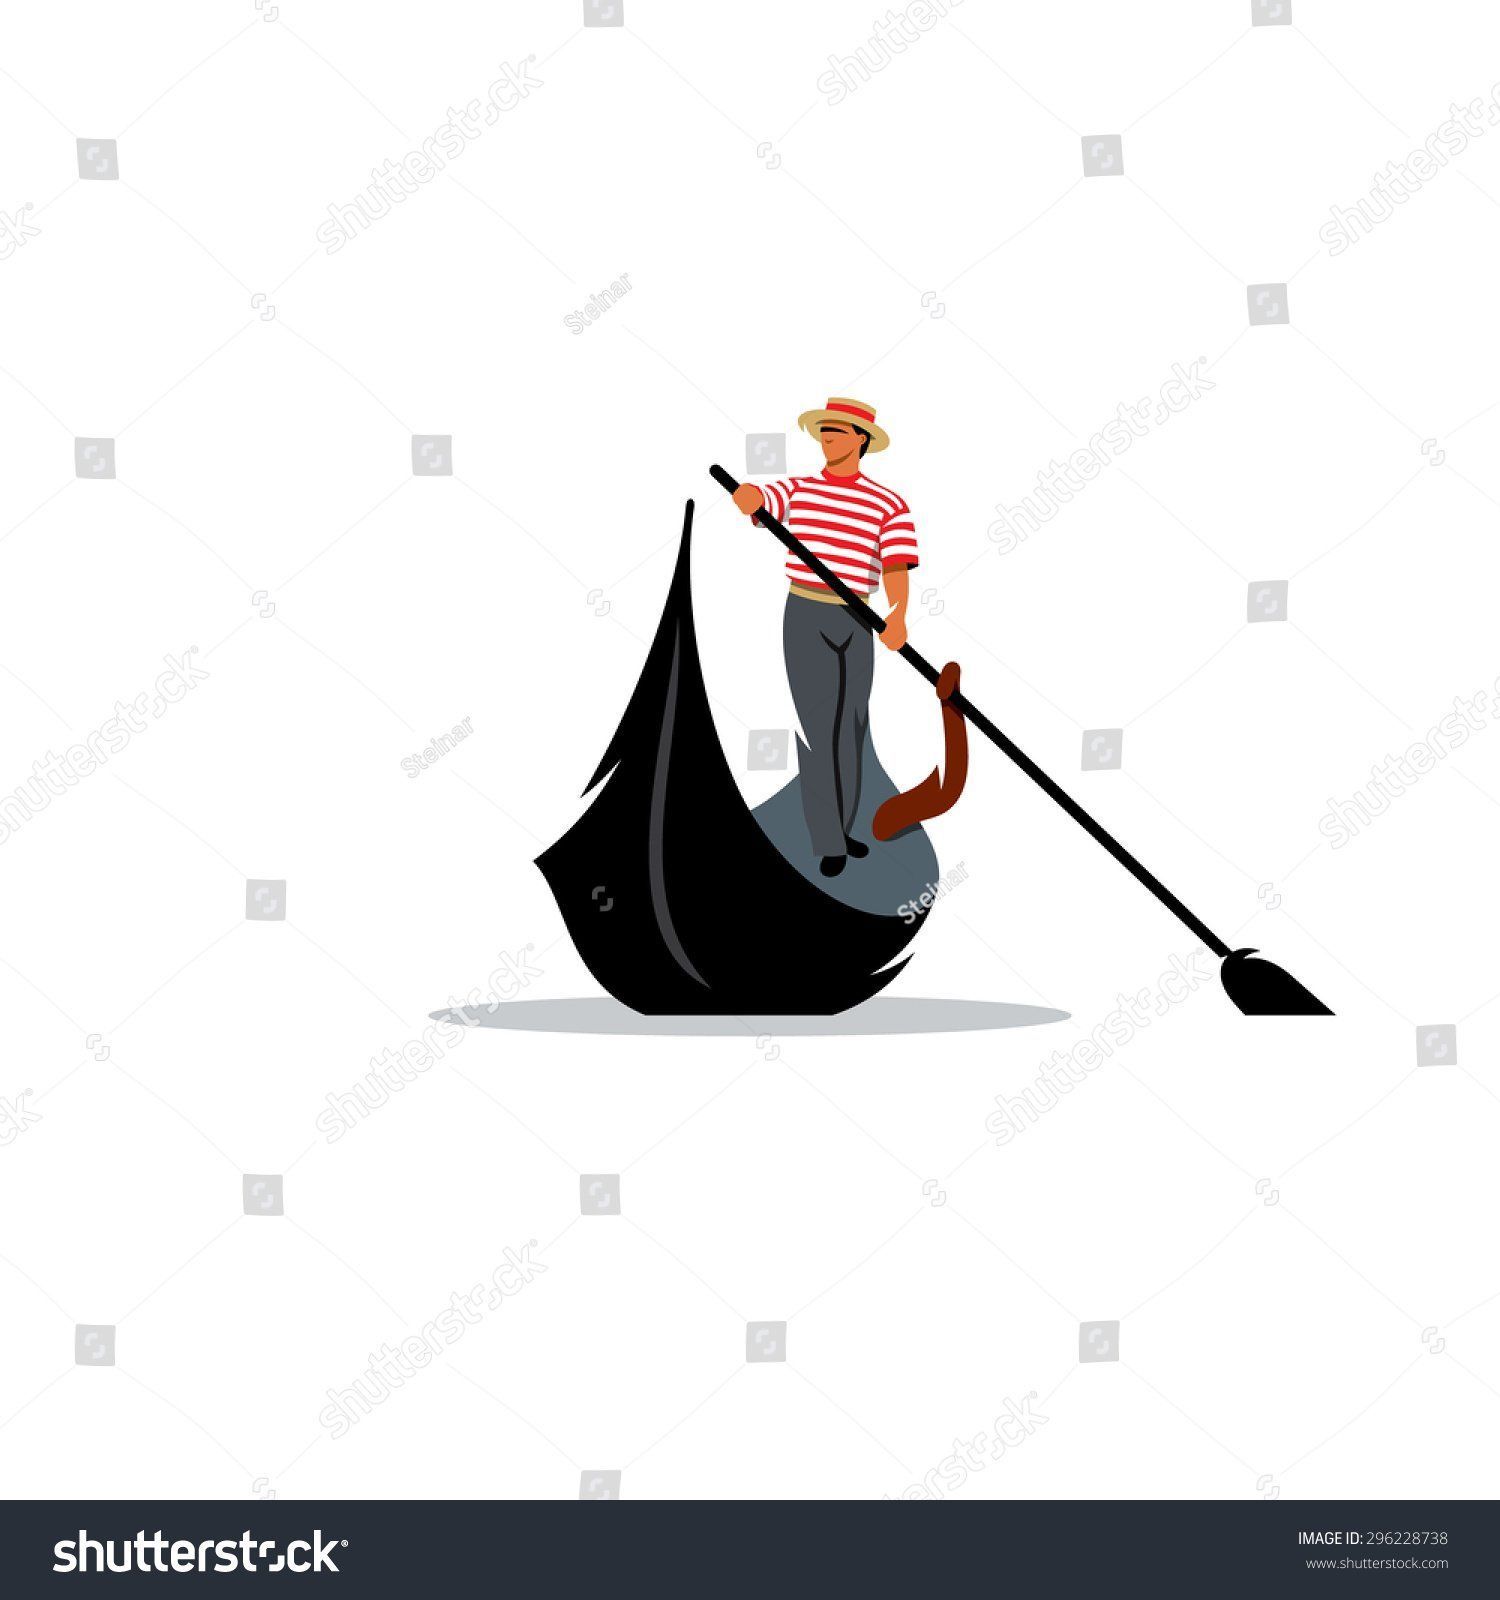 Man swinging oar